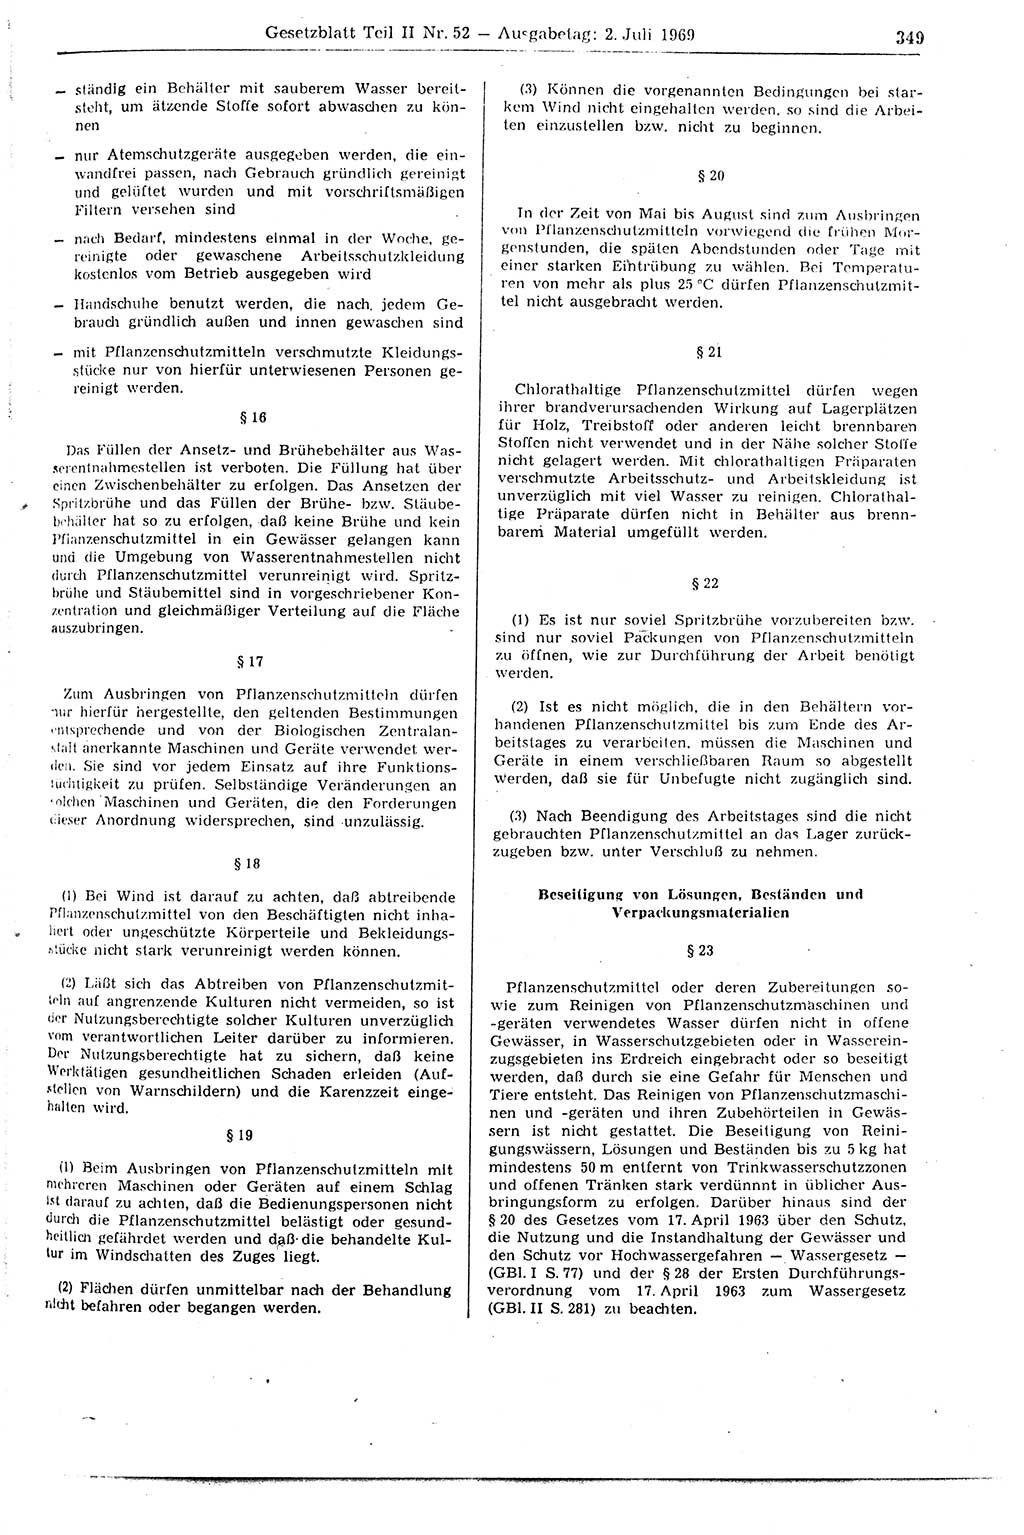 Gesetzblatt (GBl.) der Deutschen Demokratischen Republik (DDR) Teil ⅠⅠ 1969, Seite 349 (GBl. DDR ⅠⅠ 1969, S. 349)